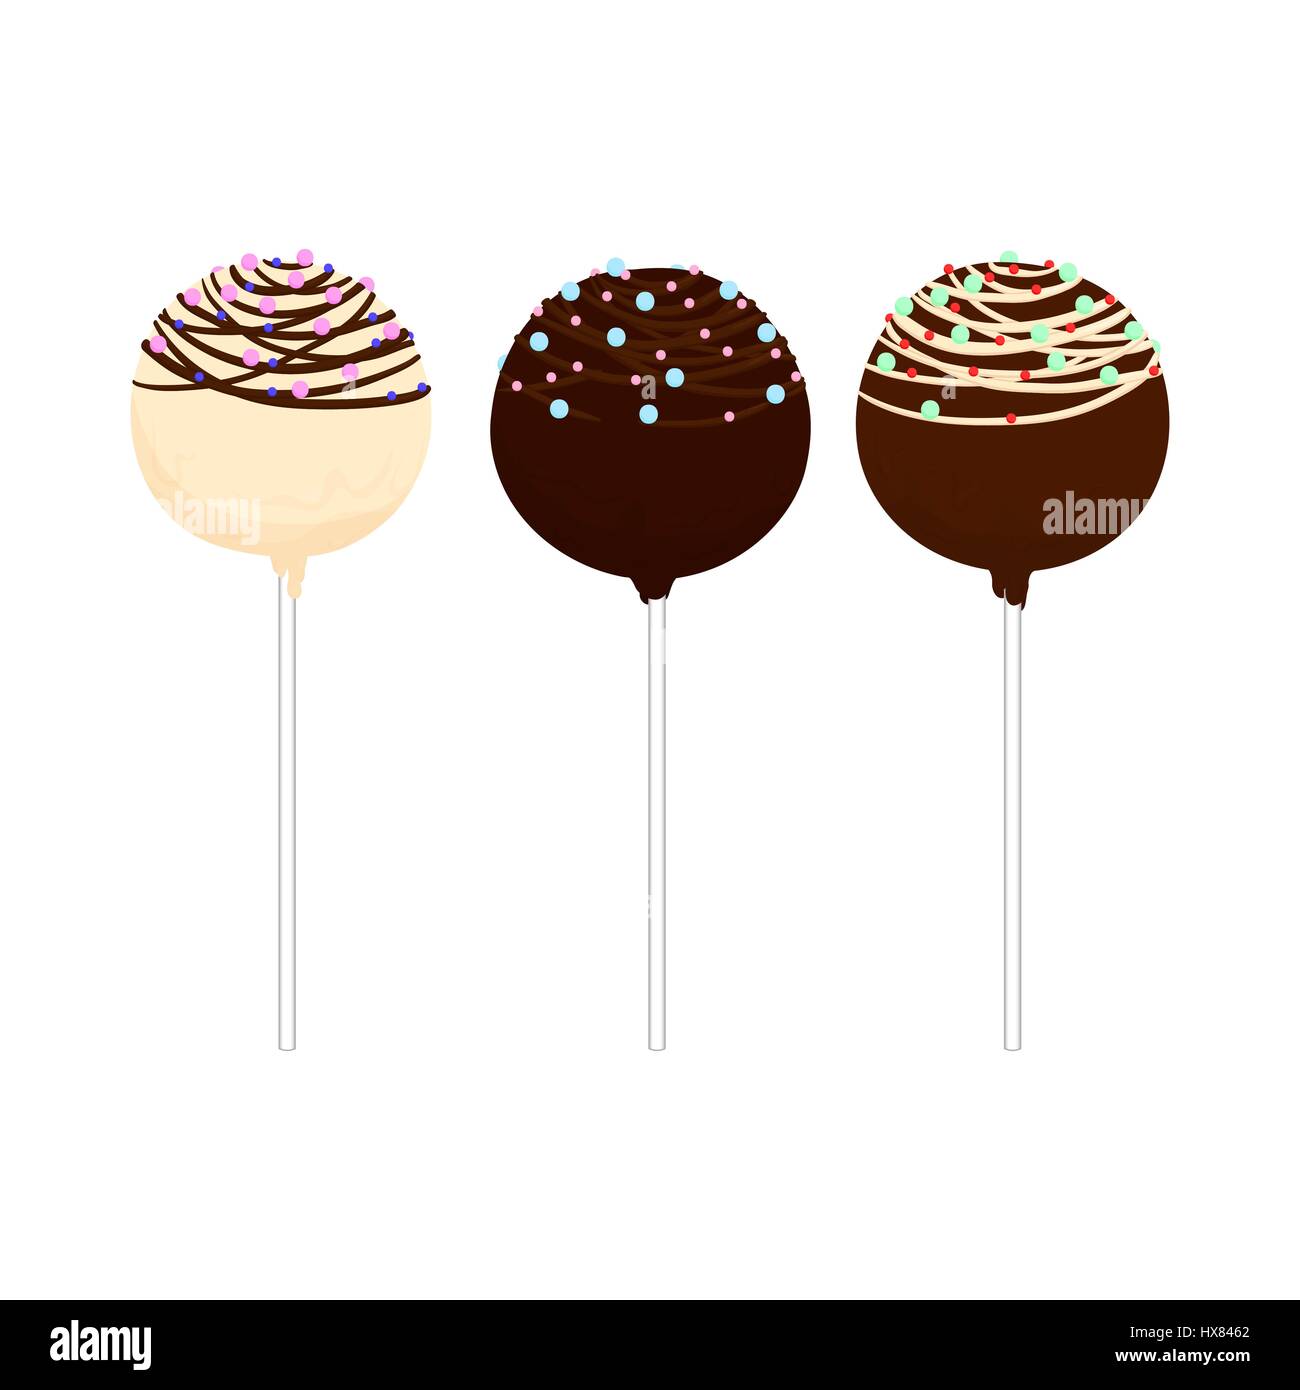 Satz von isolierten Cake Pops am Stiel in verschiedenen Farben mit verschiedenen Ornamenten. Cupcakes, runde Form auf einem Stick. Isoliert. Hand gezeichnet Vektor Stock Vektor